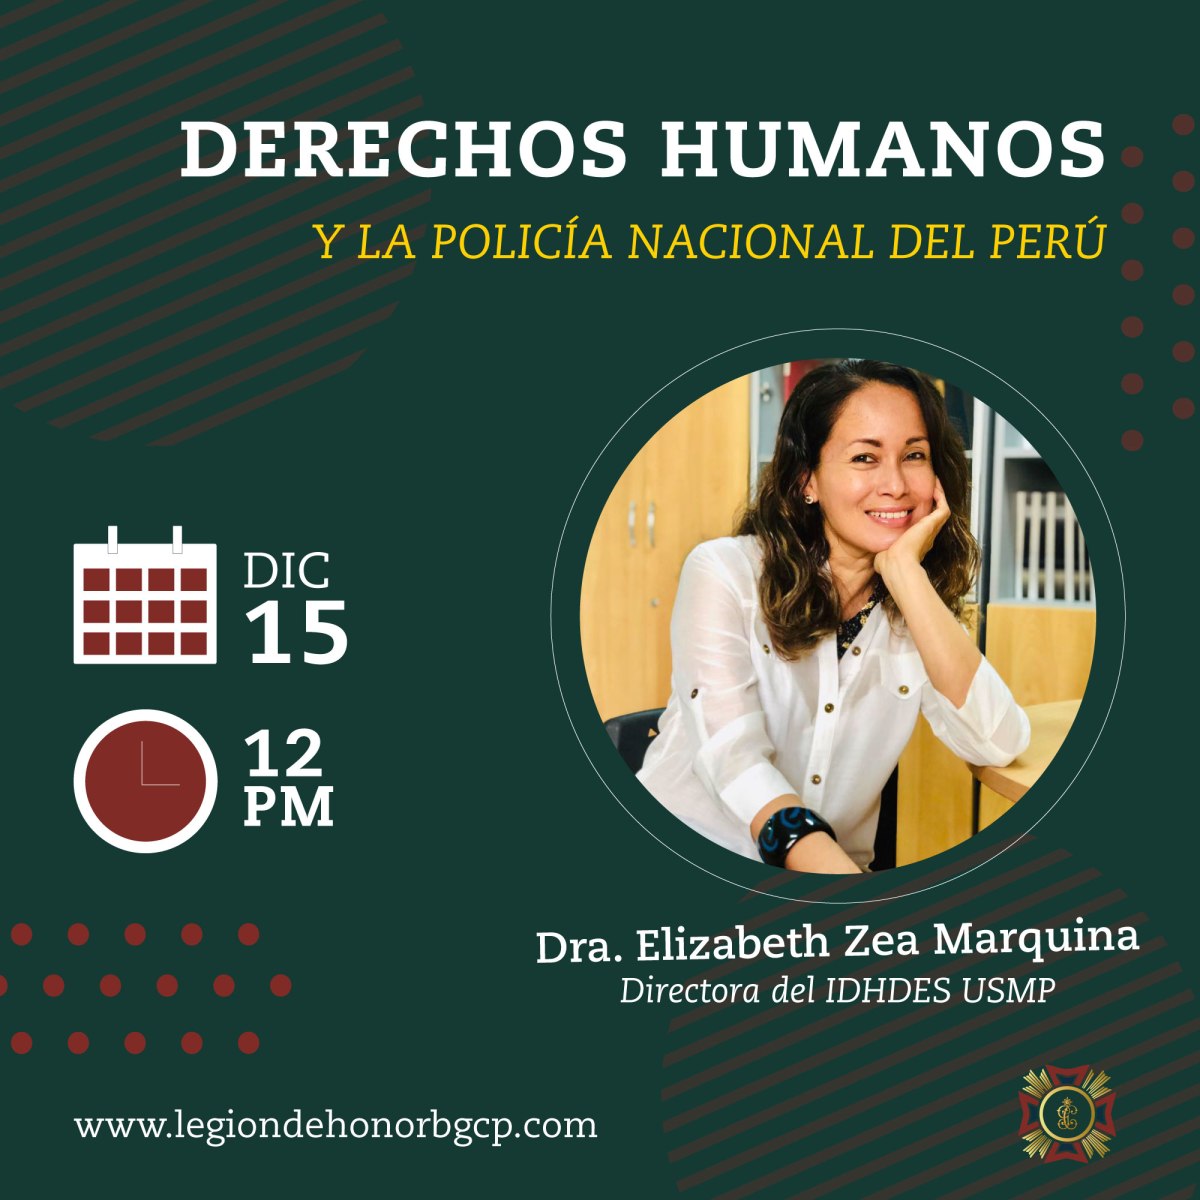 Derechos Humanos y Policía Nacional del Perú